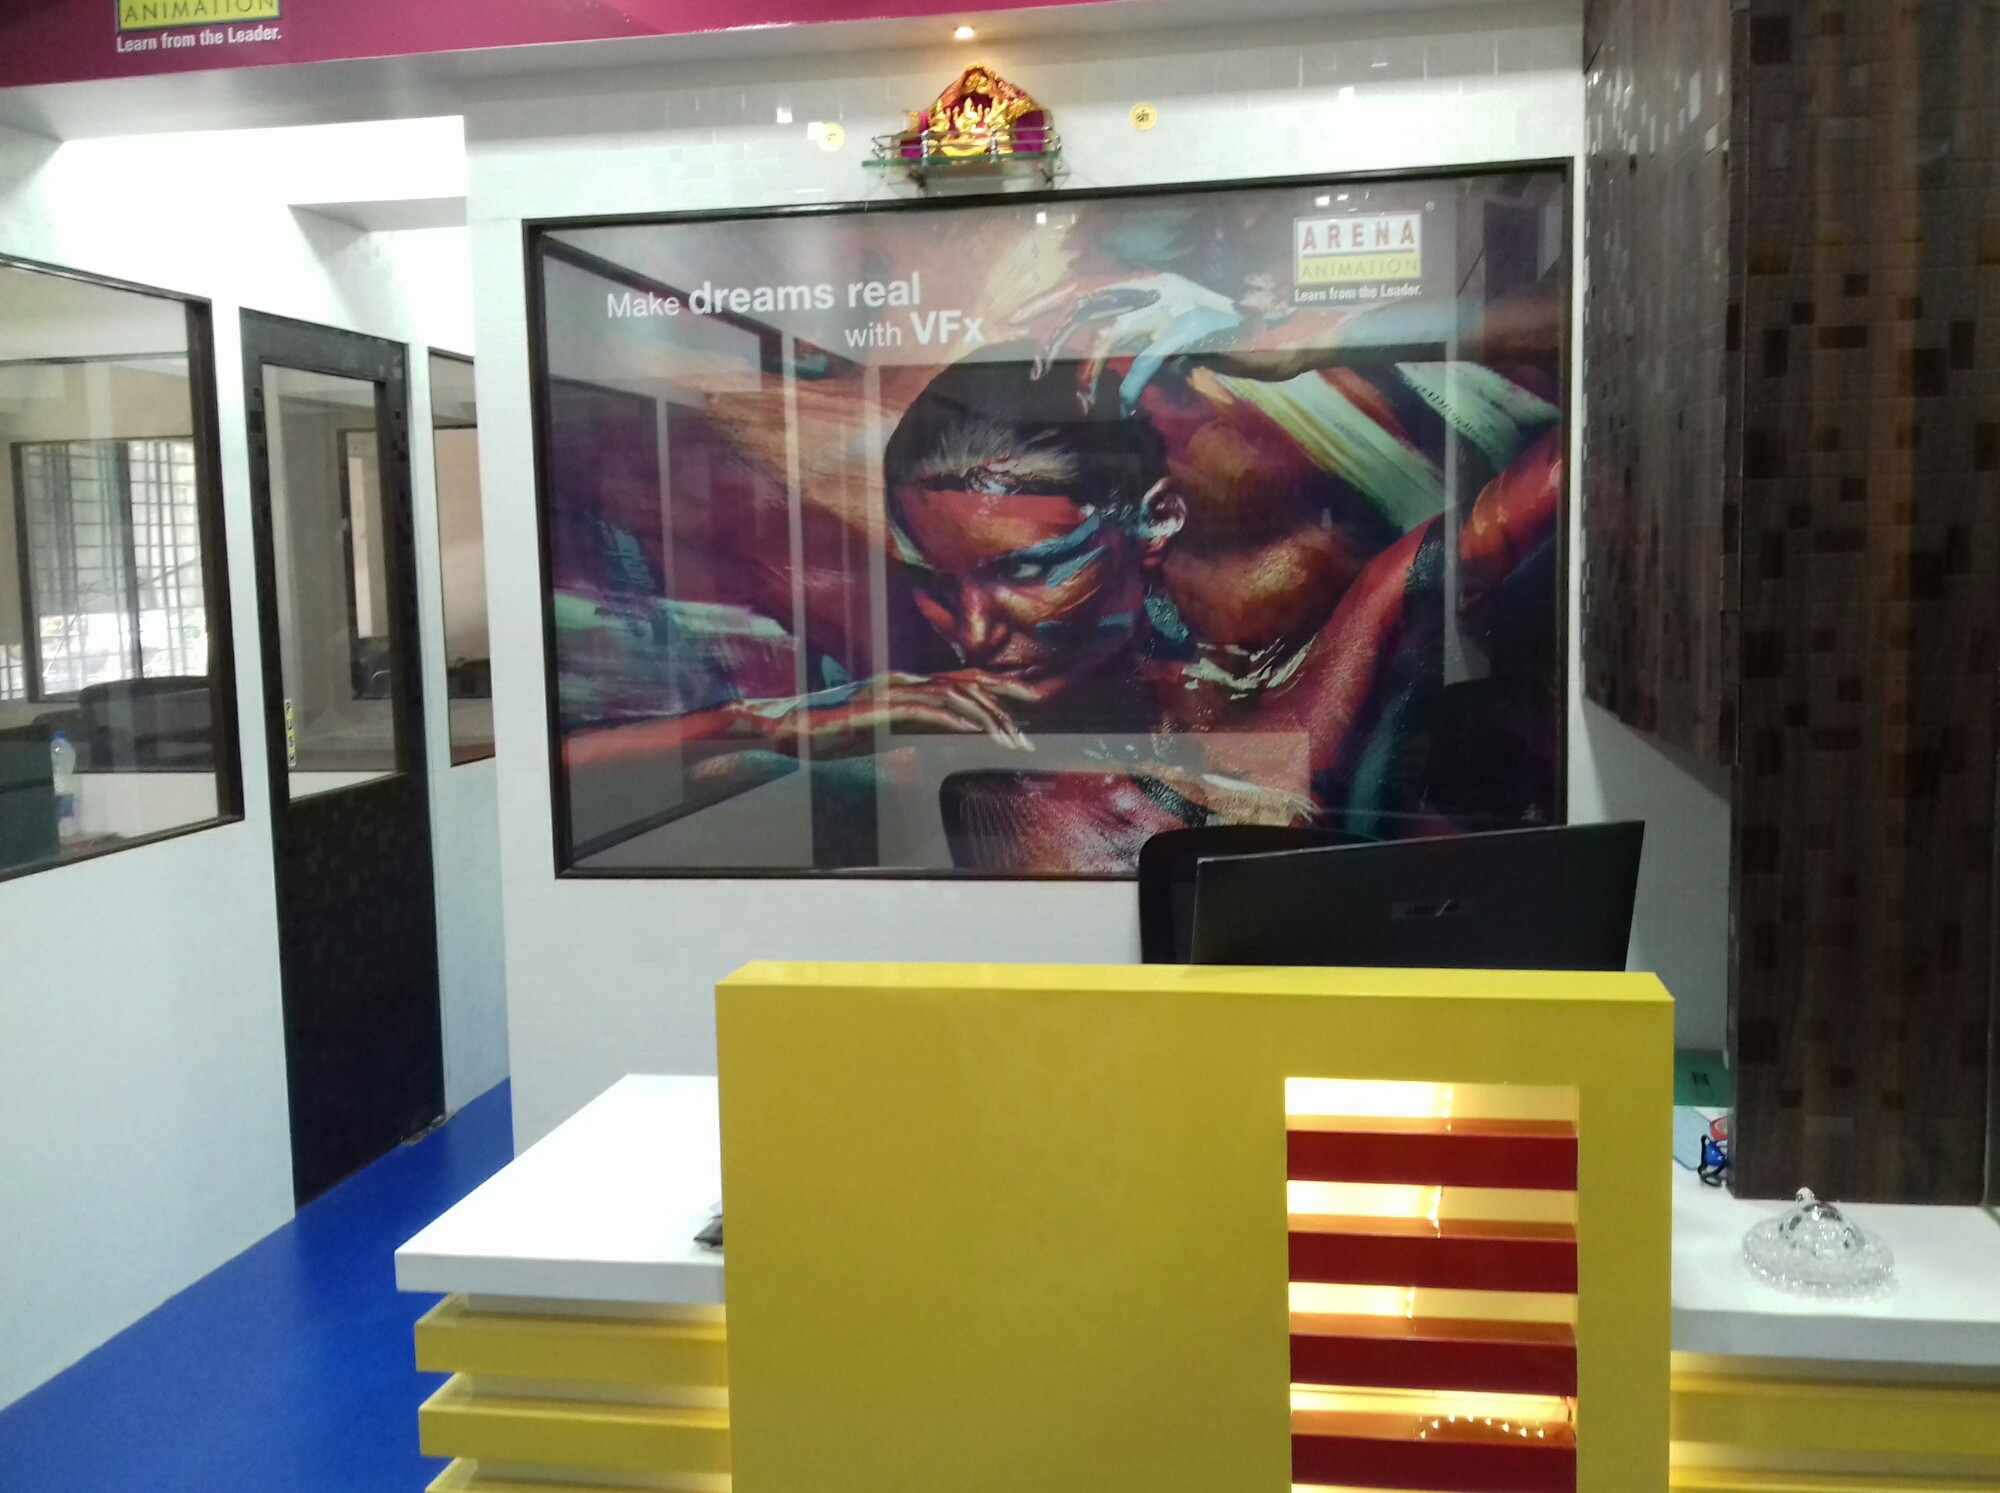 Arena Animation in Goregaon East, Mumbai-400063 | Sulekha Mumbai